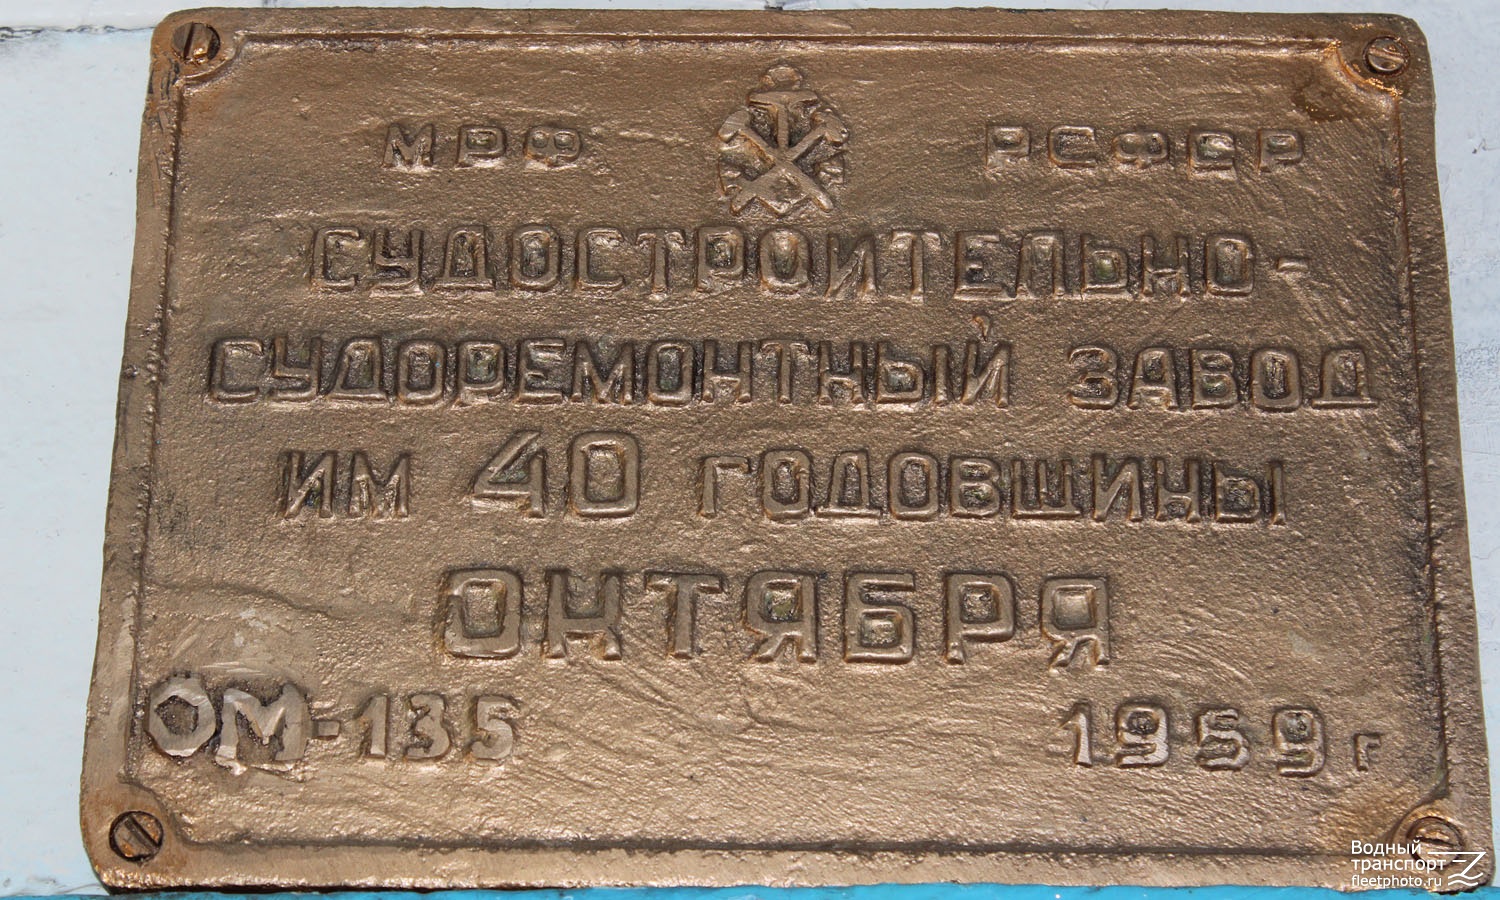 ОМ-135. Shipbuilder's Makers Plates